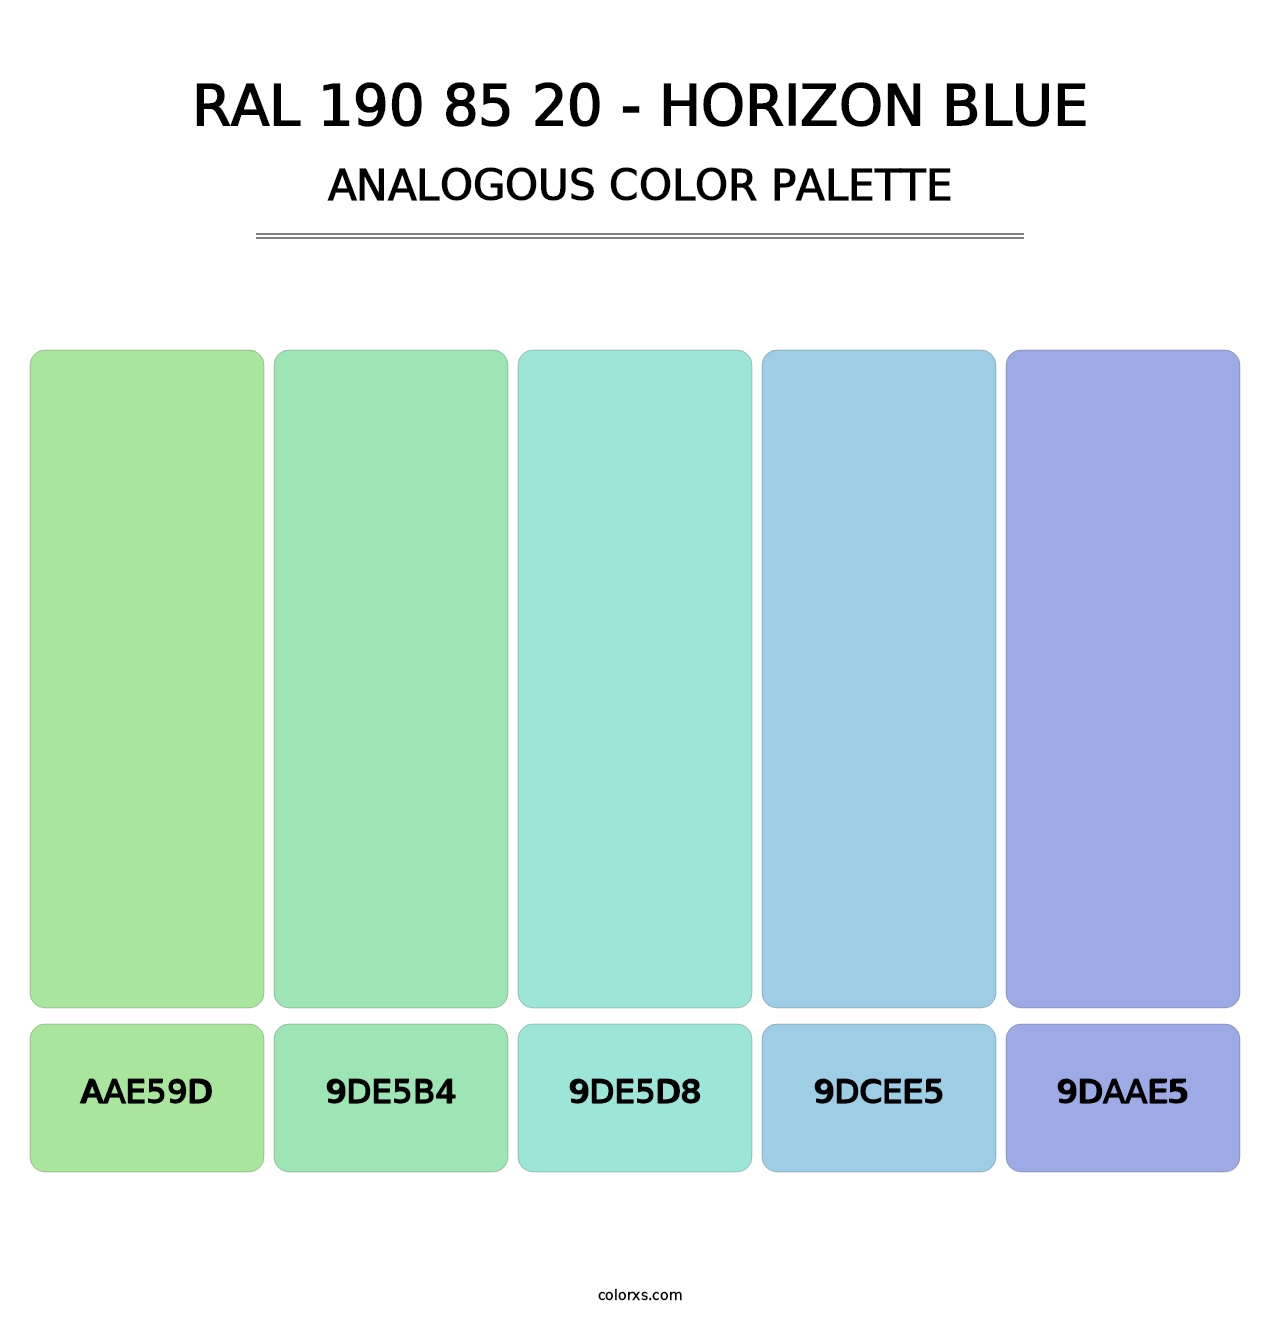 RAL 190 85 20 - Horizon Blue - Analogous Color Palette